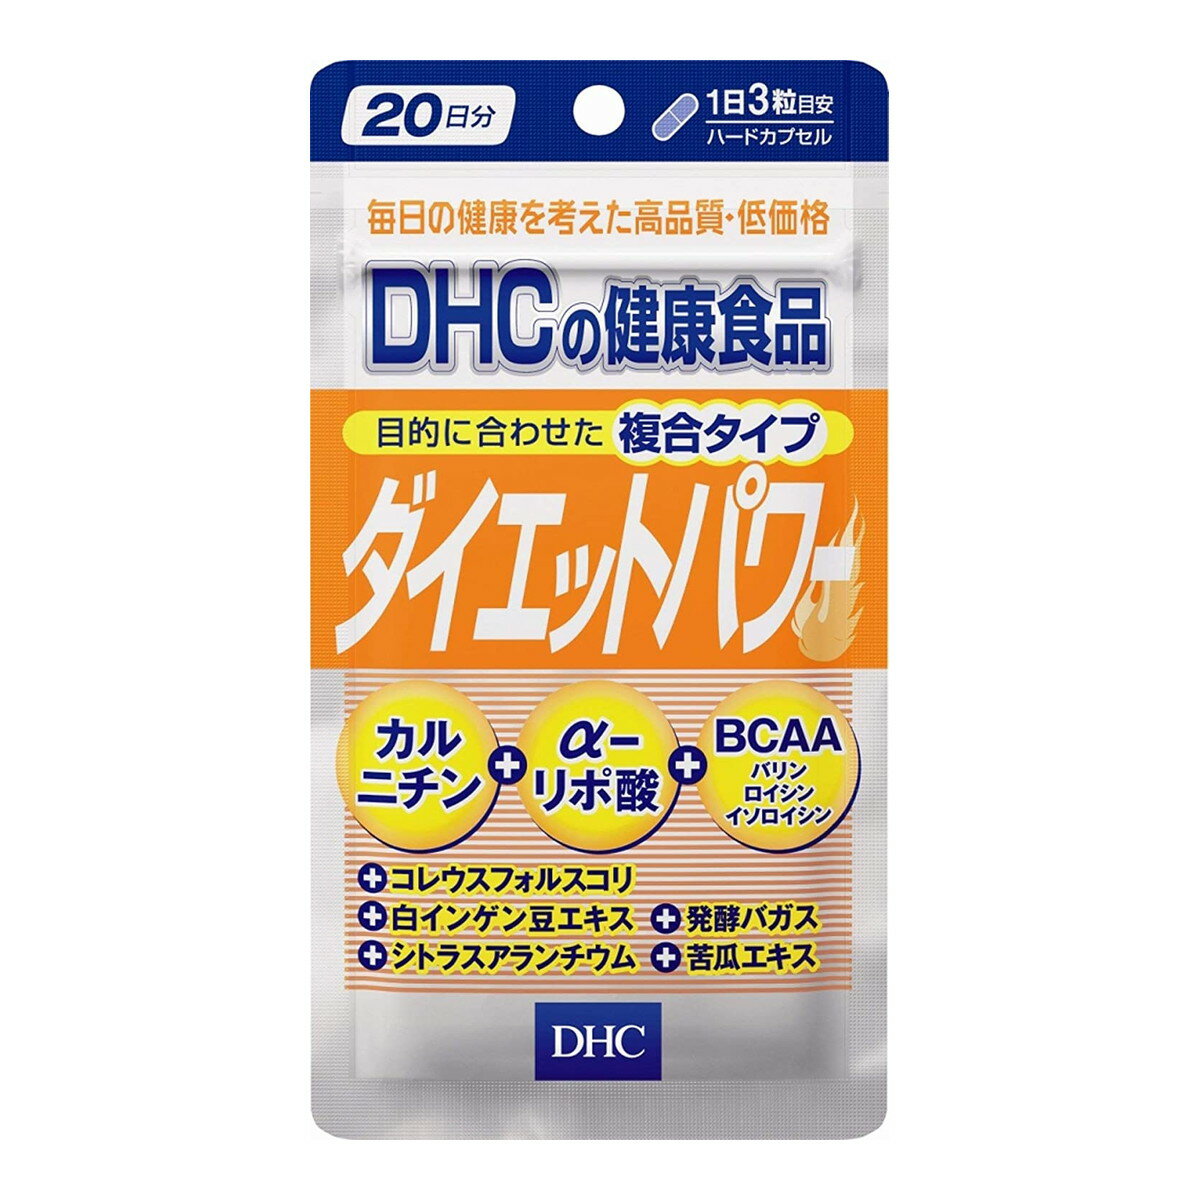 【サマーセール】DHC ダイエットパ